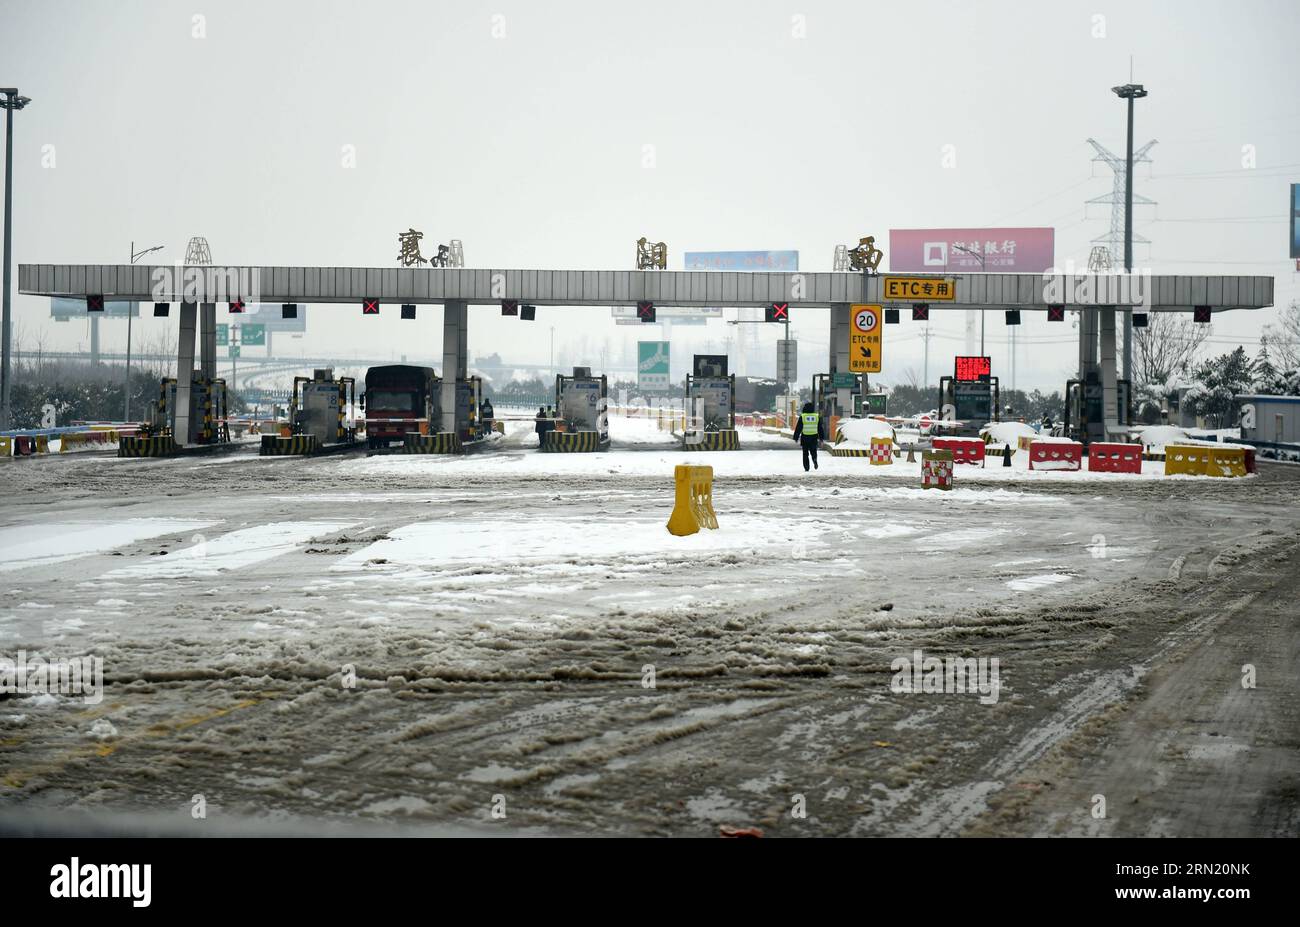 (150129) -- WUHAN, 29 janvier 2015 -- la photo prise le 29 janvier 2015 montre l'entrée Xiangyang Ouest de la voie rapide Fuzhou-Yinchuan fermée en raison de chutes de neige dans la province du Hubei, au centre de la Chine. La pluie et la neige continuelles ont frappé la province depuis mercredi. ) (Wyo) CHINA-HUBEI-SNOWFALL (CN) HaoxTongqian PUBLICATIONxNOTxINxCHN Wuhan Jan 29 2015 photo prise LE 29 2015 janvier montre l'entrée OUEST Xiang Yang de la Fuzhou Yinchuan Expressway fermée en raison de chutes de neige dans la province centrale de Hubei S la pluie et la neige ont frappé la province depuis mercredi Chine Hubei CN PUBLICATIONxNOTxINxCHN chute de neige Banque D'Images